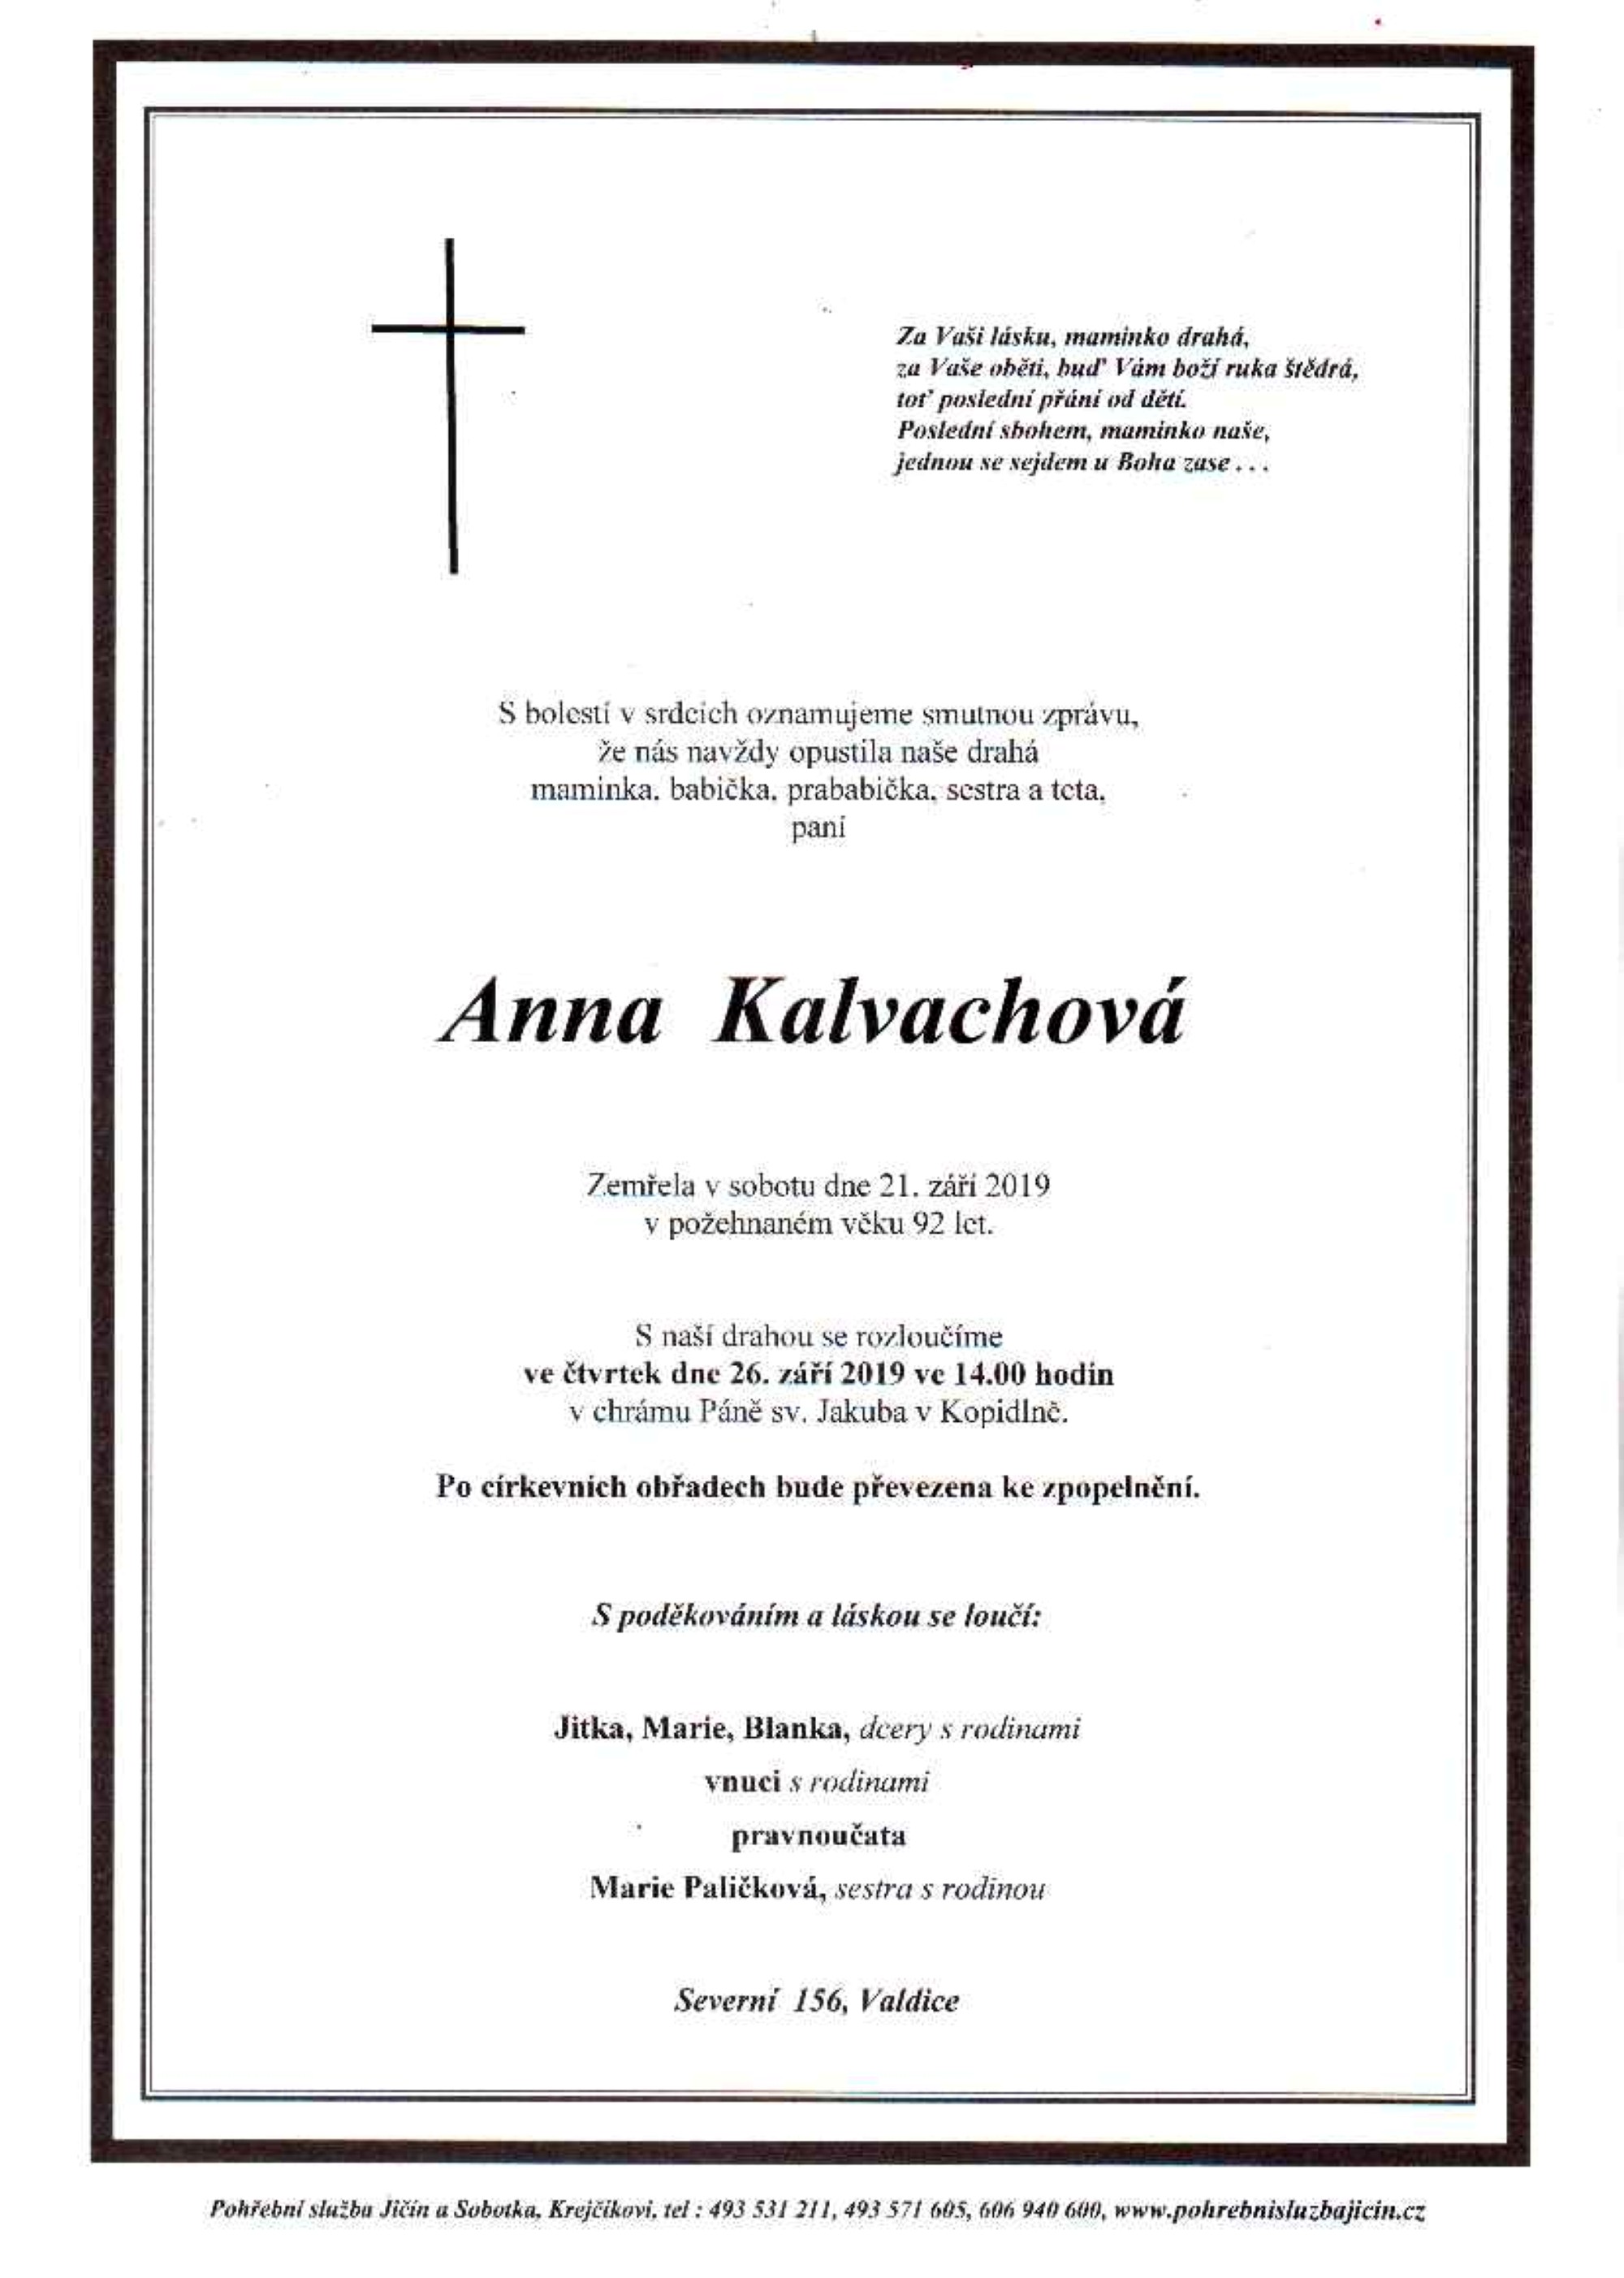 Anna Kalvachová